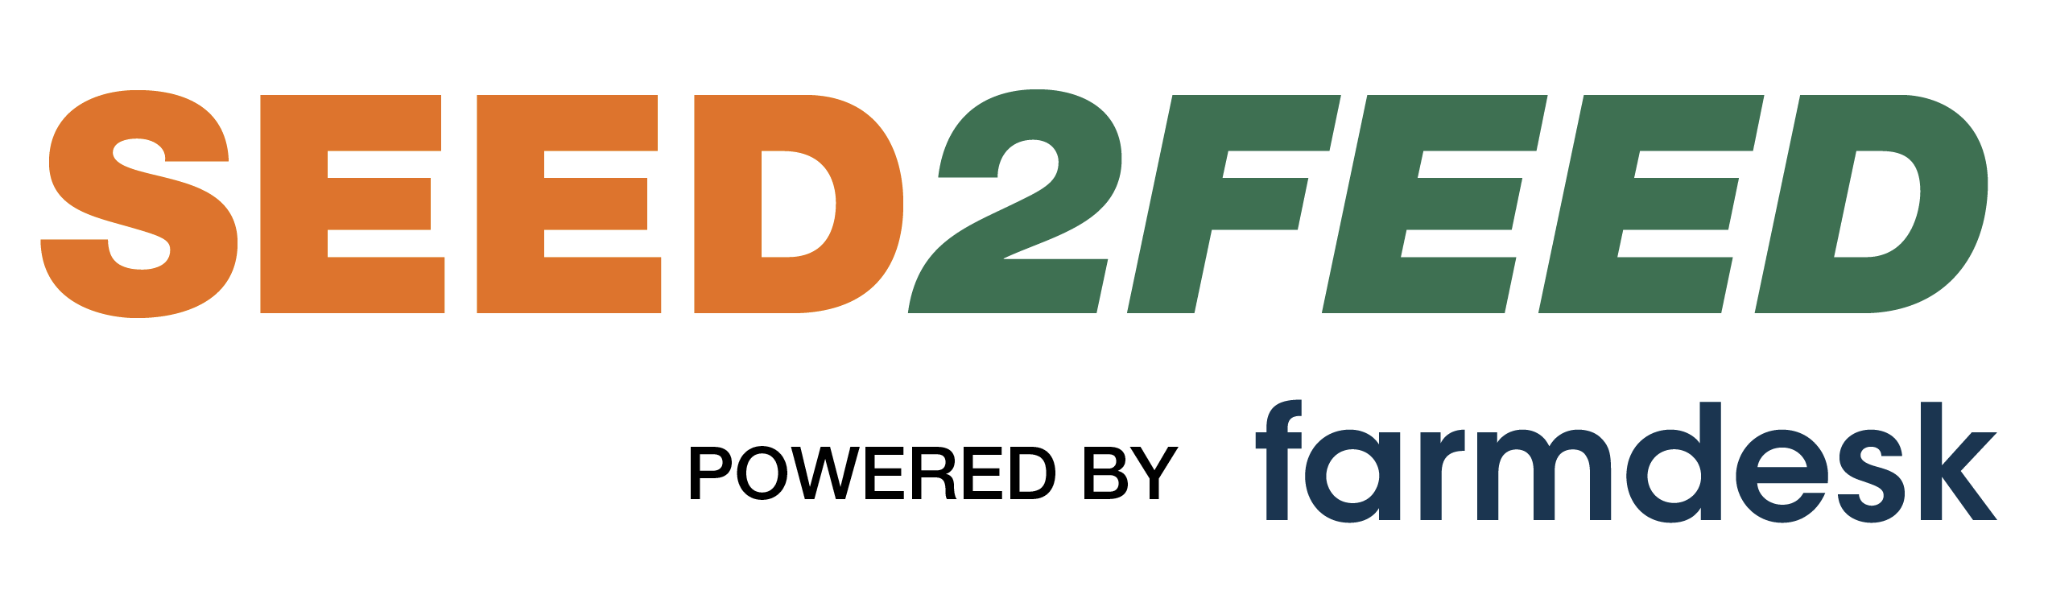 Seed2Feed logo